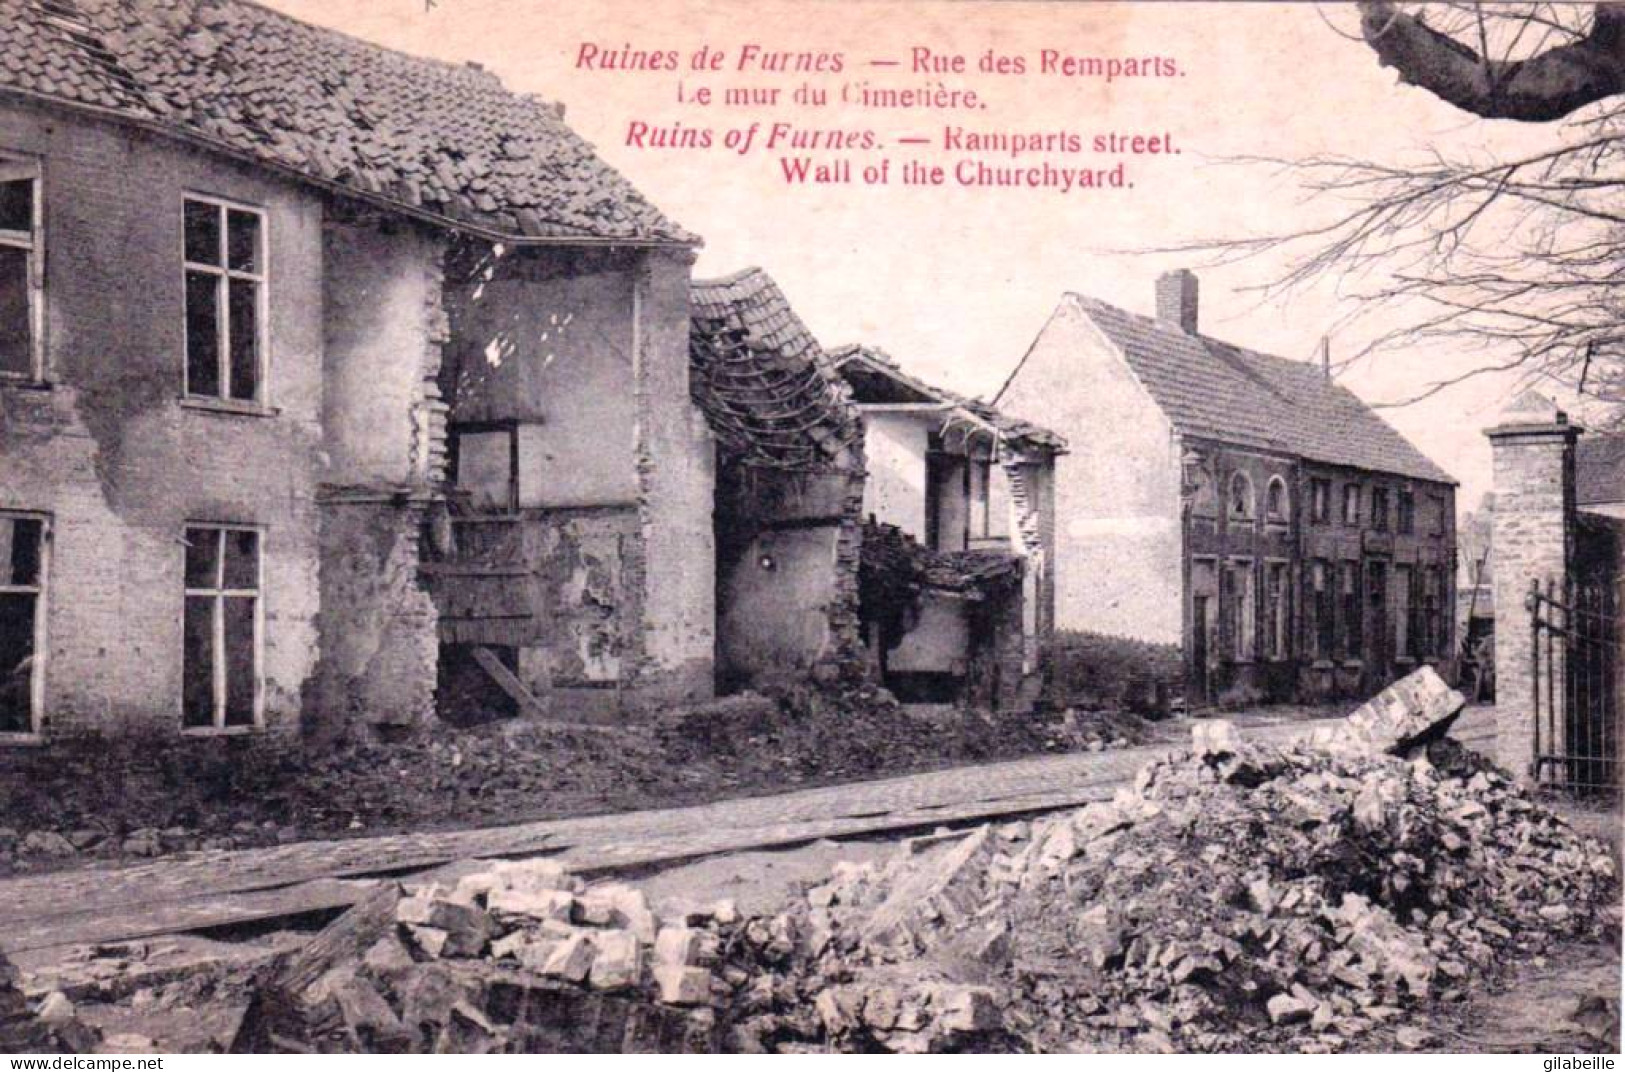  VEURNE/ FURNES -  Ruines De Furnes -  Rue Des Remparts - Le Mur Du Cimetiere   - Guerre 1914/18 - Veurne